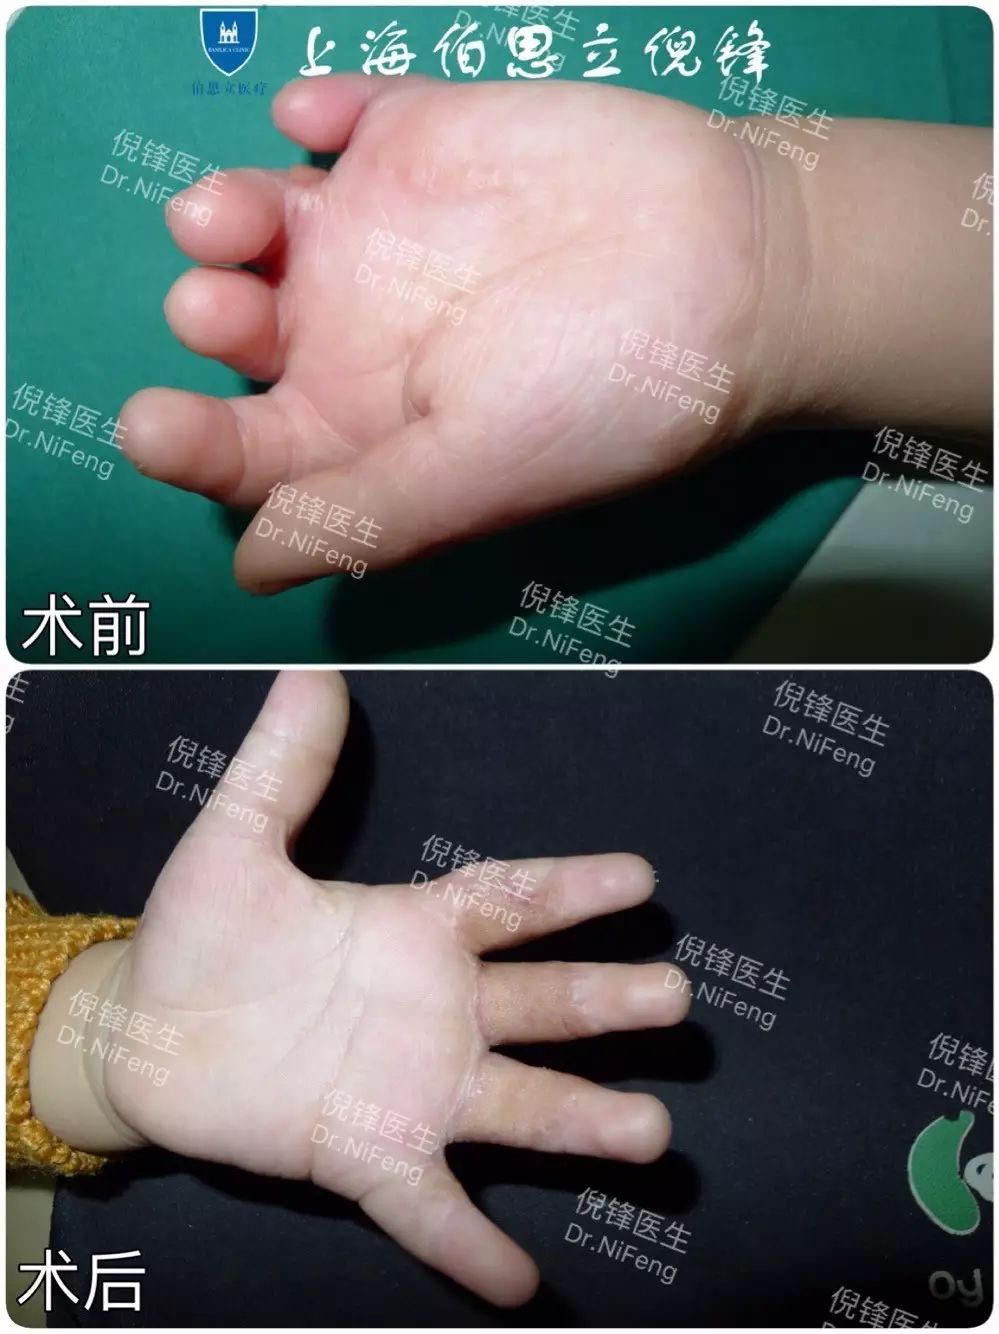 术后效果:手指植皮后不但功能完全恢复,而且植的皮色泽质地也令人